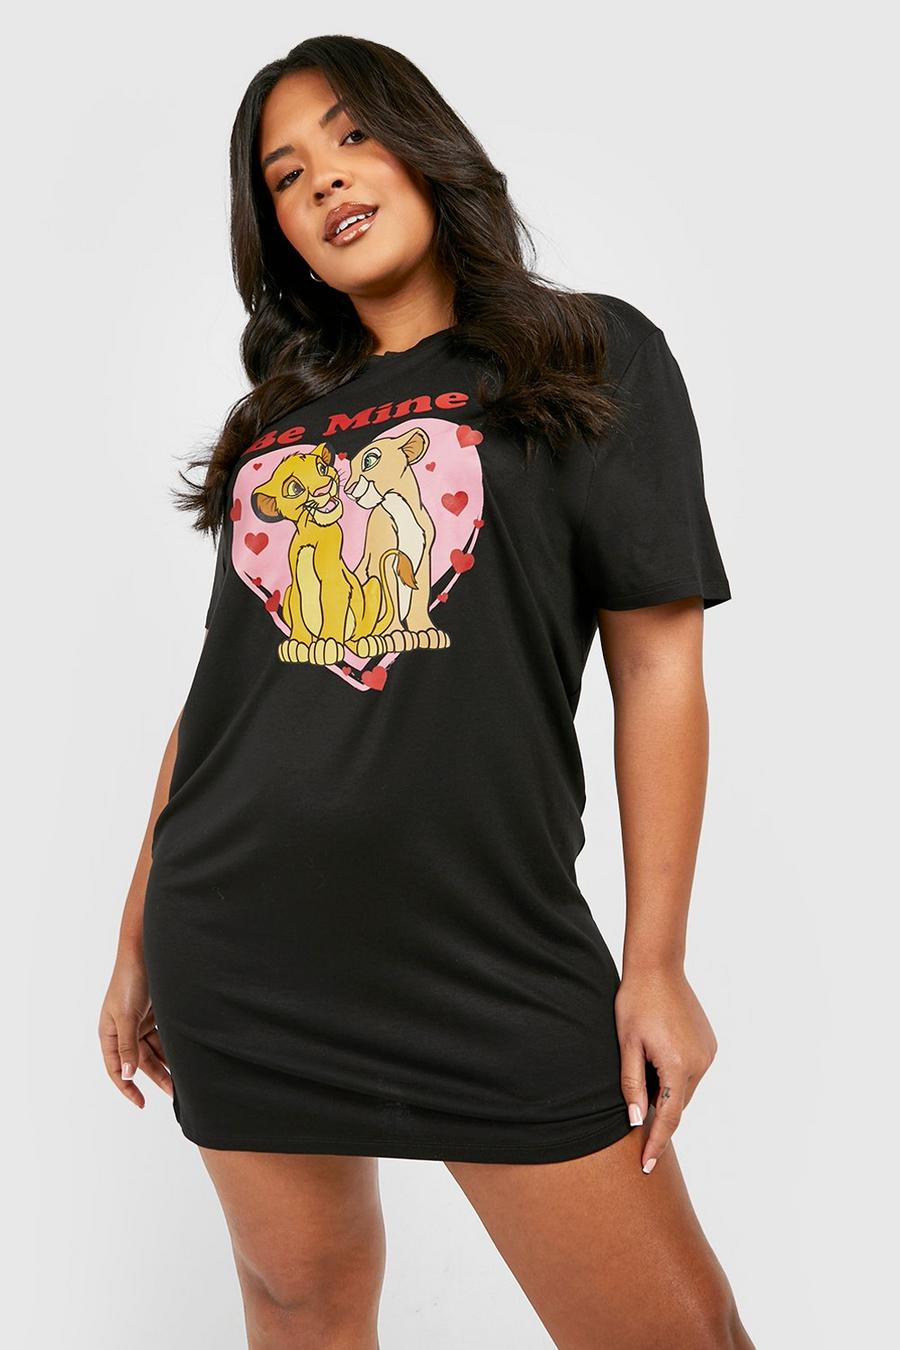 T-shirt pigiama Plus Size Disney di S. Valentino del Re Leone, Black negro